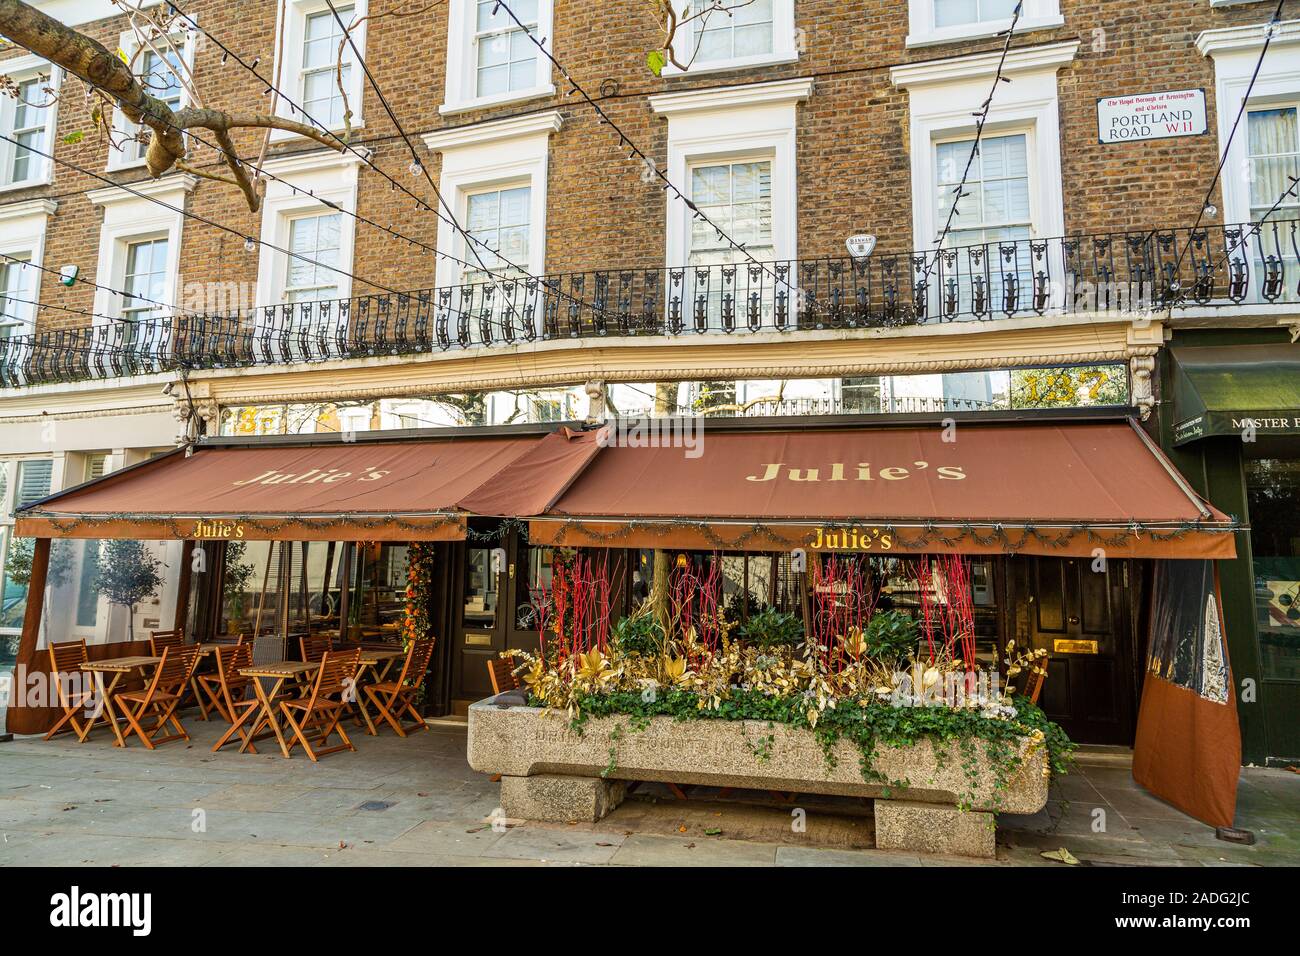 Julie's restaurant et bar, de longue date pour les célébrités a-List, les stars du rock, les royalties dans le quartier chic de Notting Hill Londres Royaume-Uni Banque D'Images